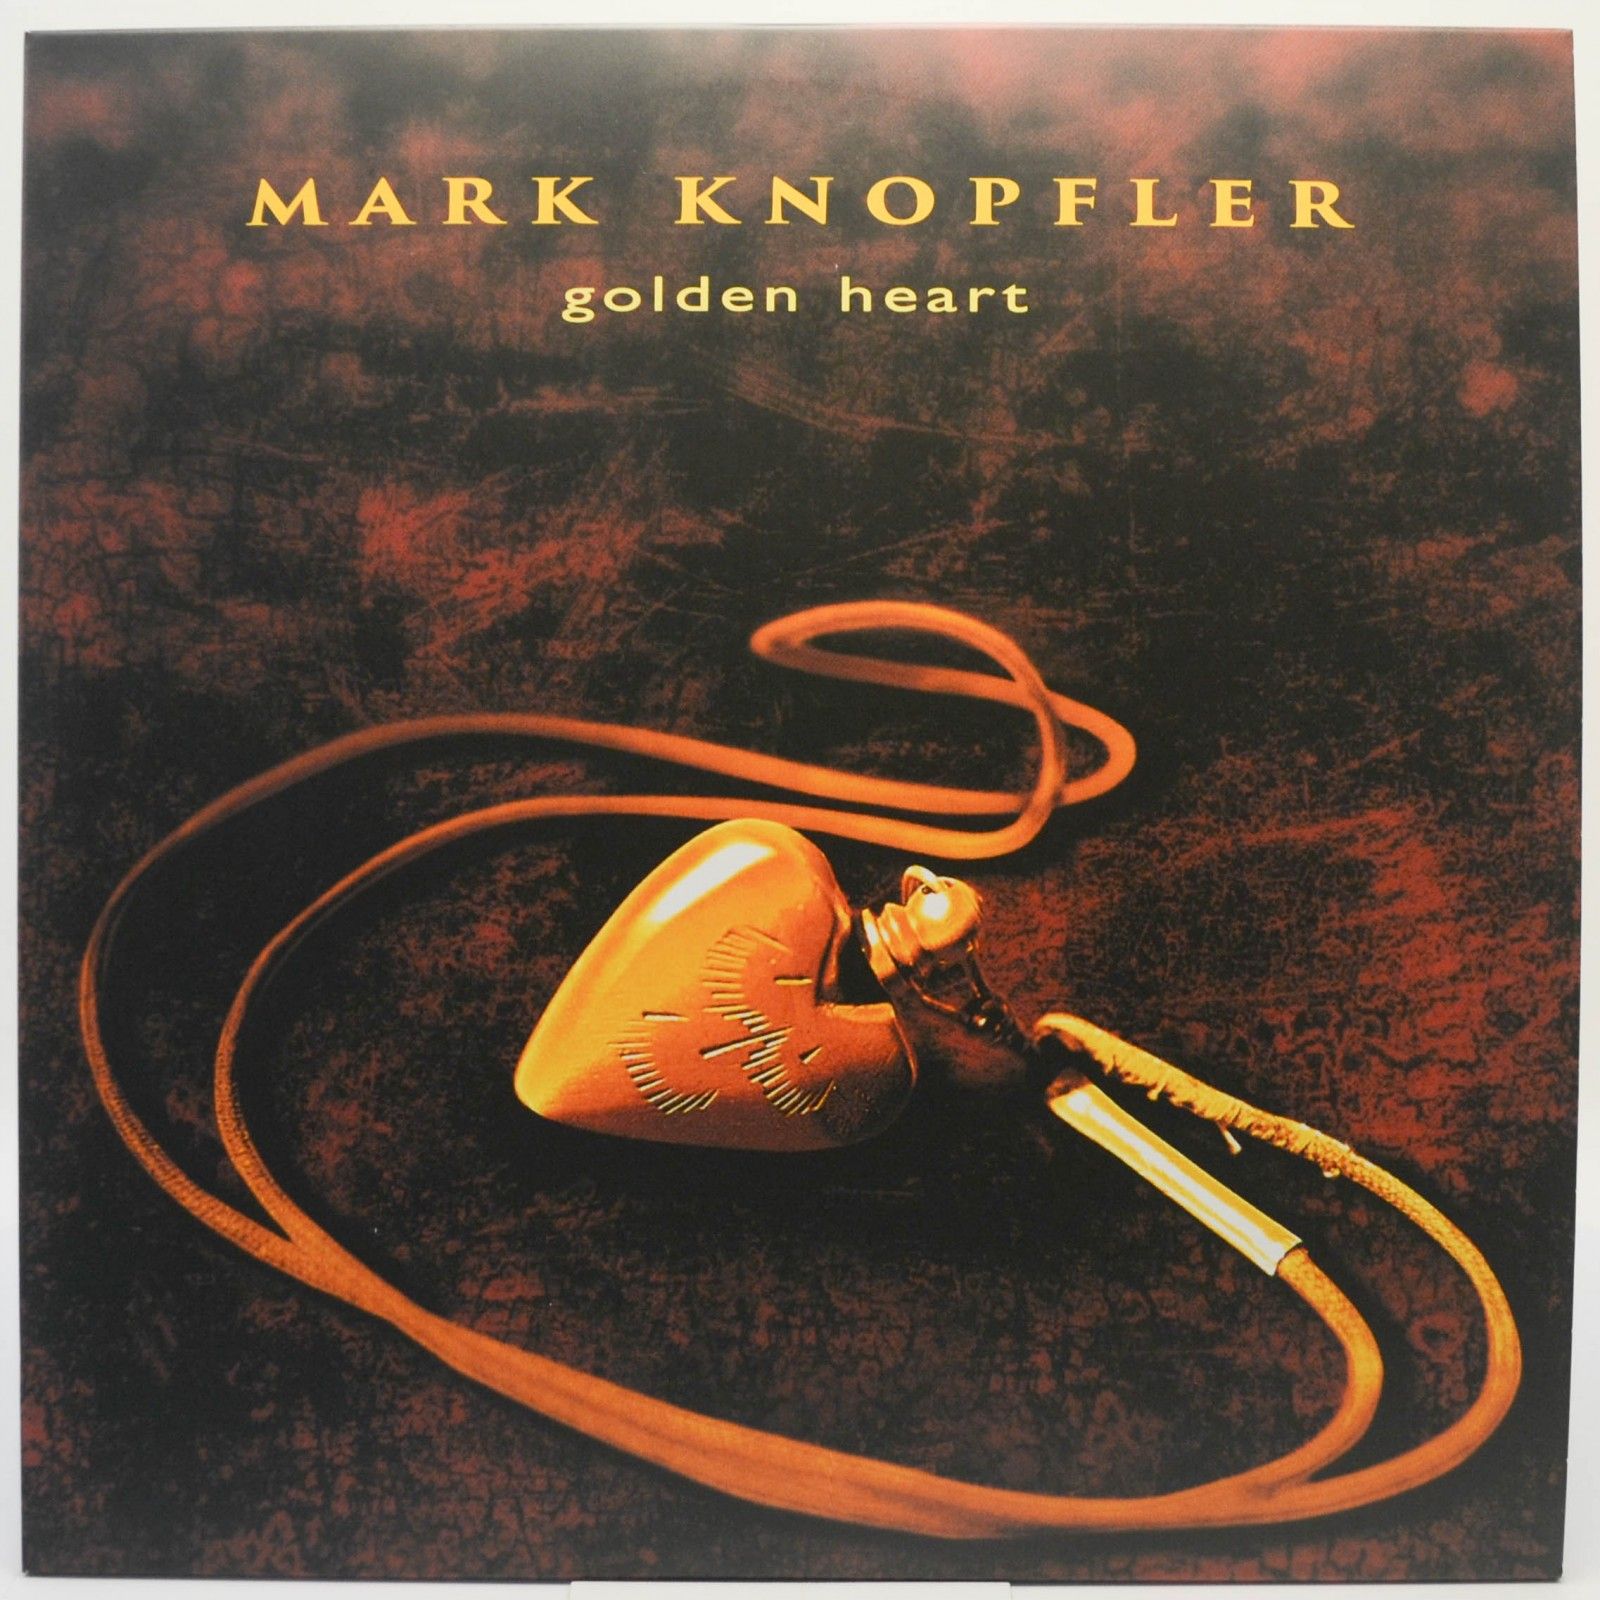 Mark Knopfler — Golden Heart, 1996